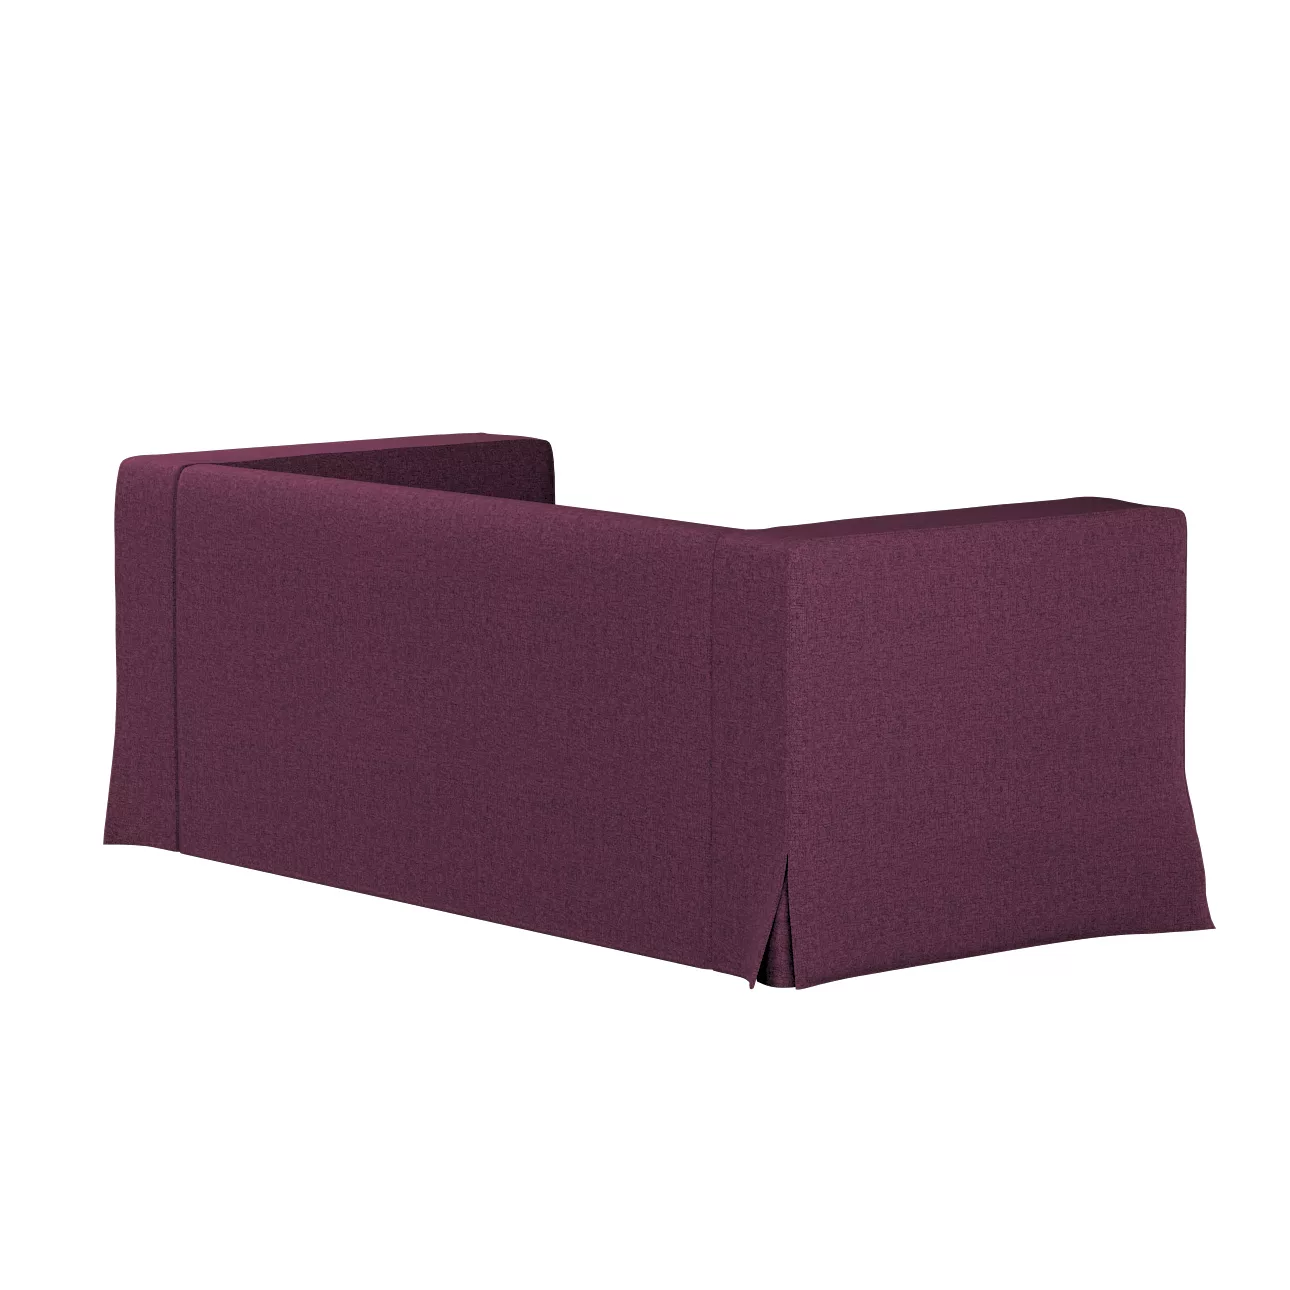 Bezug für Klippan 2-Sitzer Sofa, lang mit Kellerfalte, pflaumenviolett, Kli günstig online kaufen